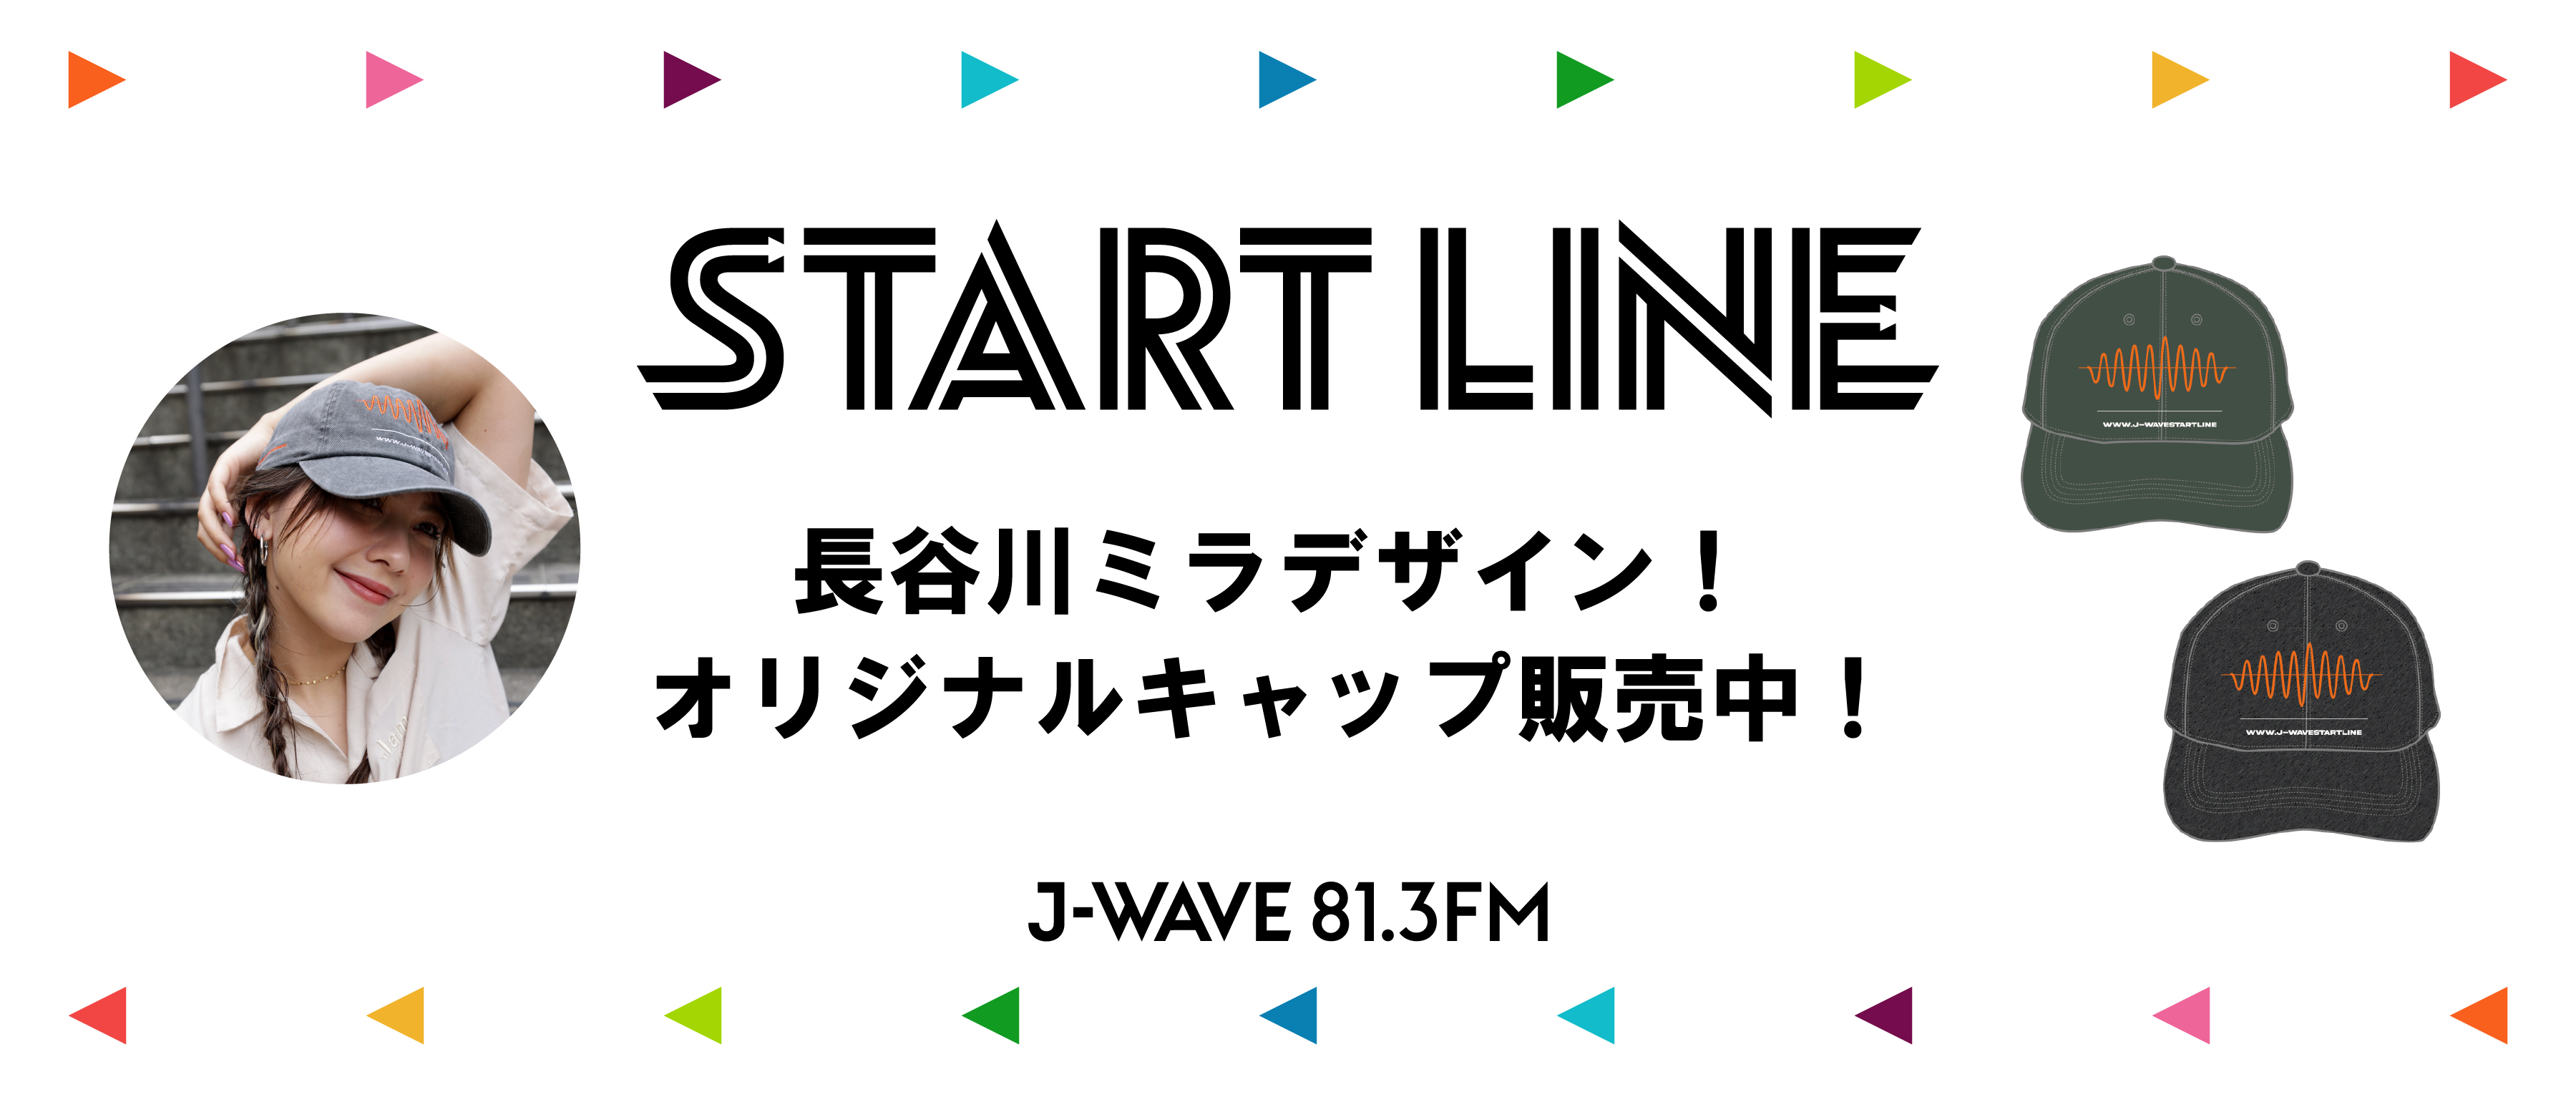 J-WAVE「START LINE」